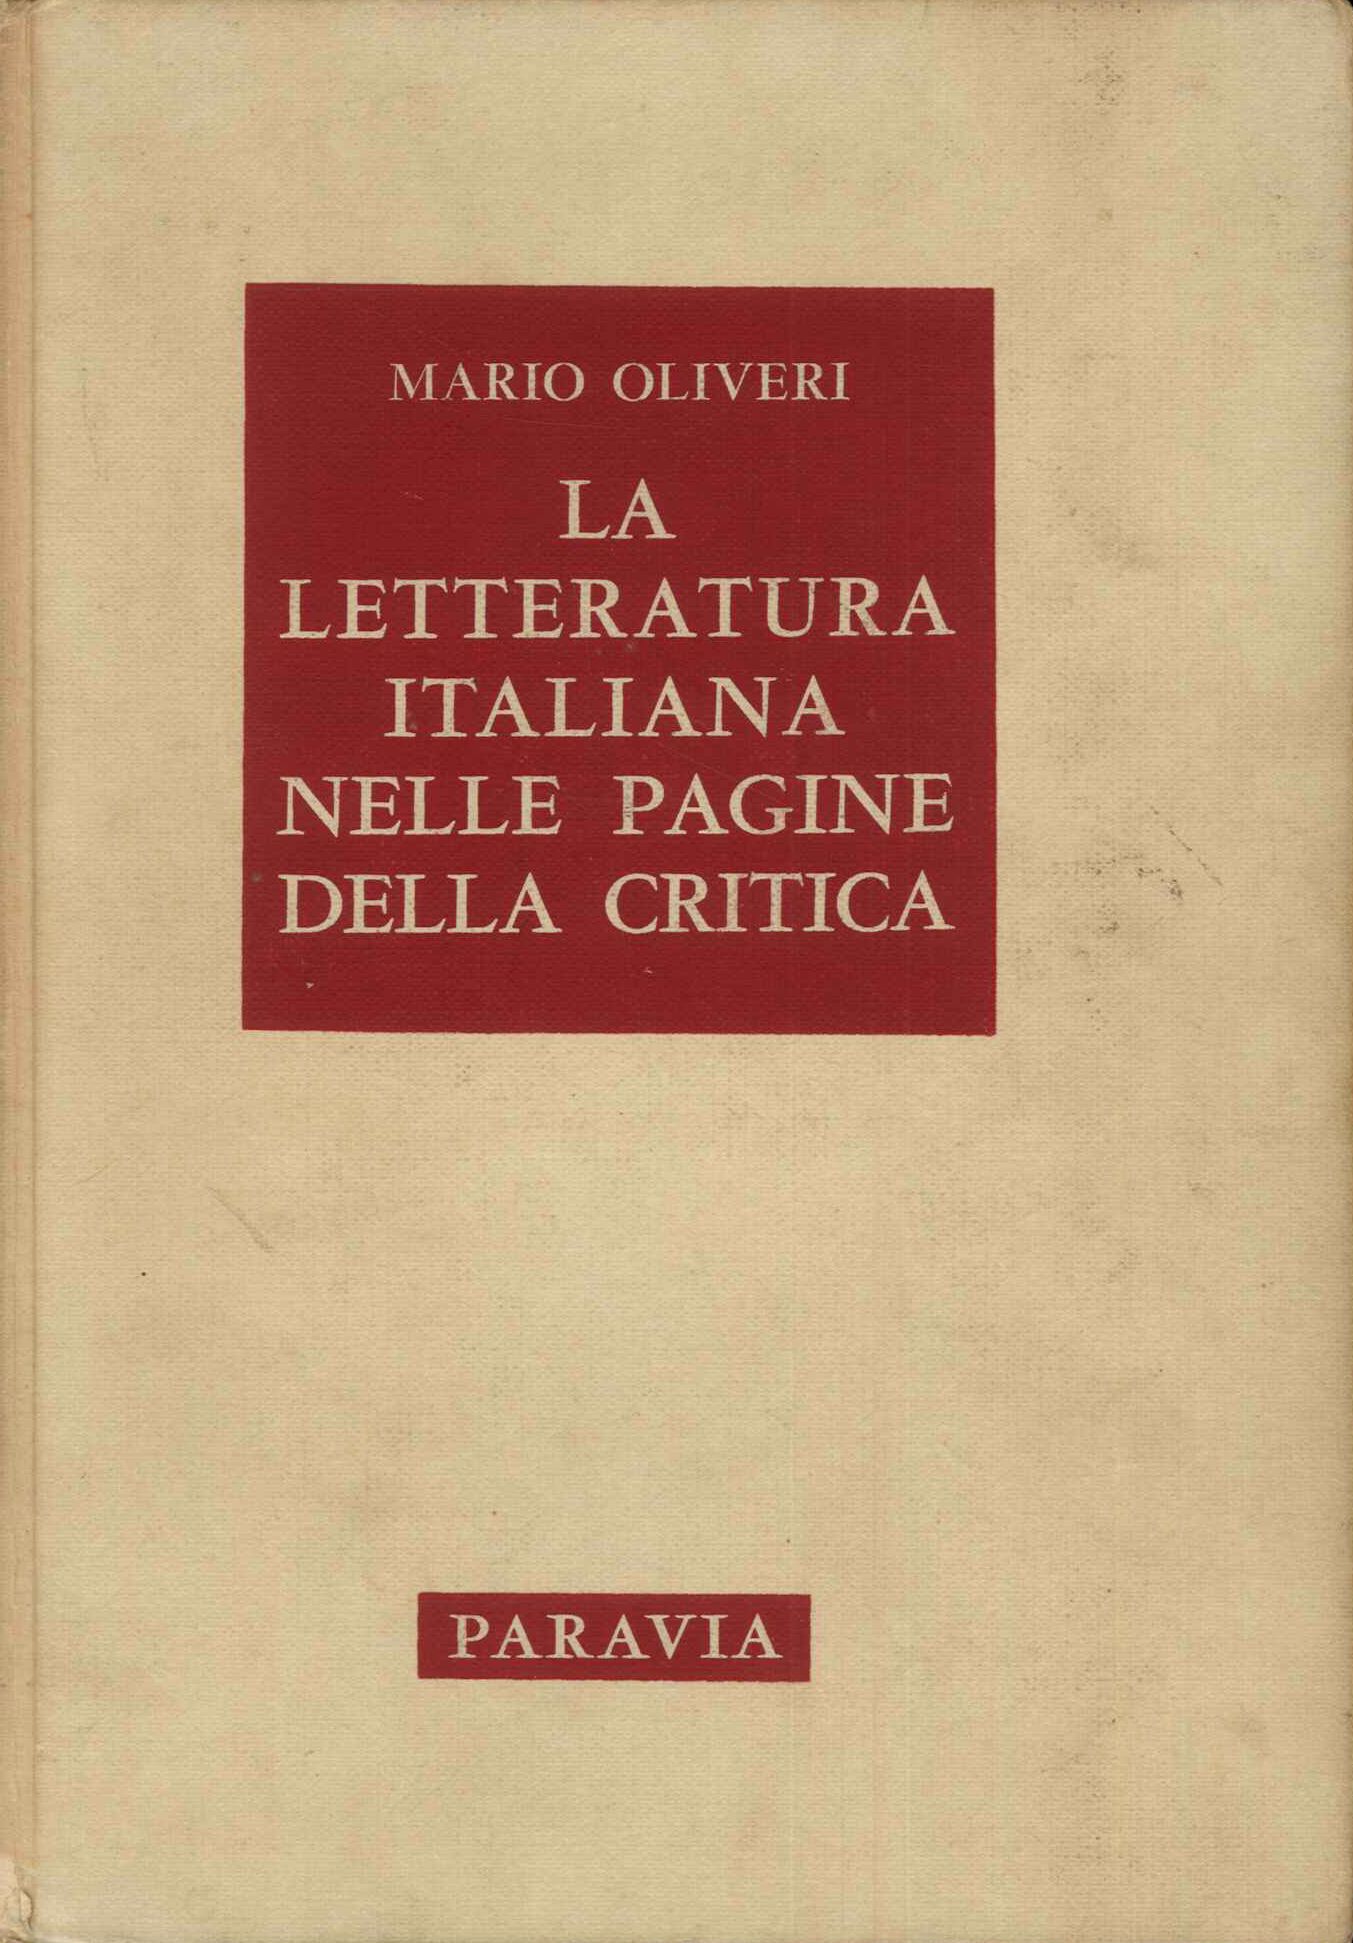 Letteratura italiana nelle pagine della critica